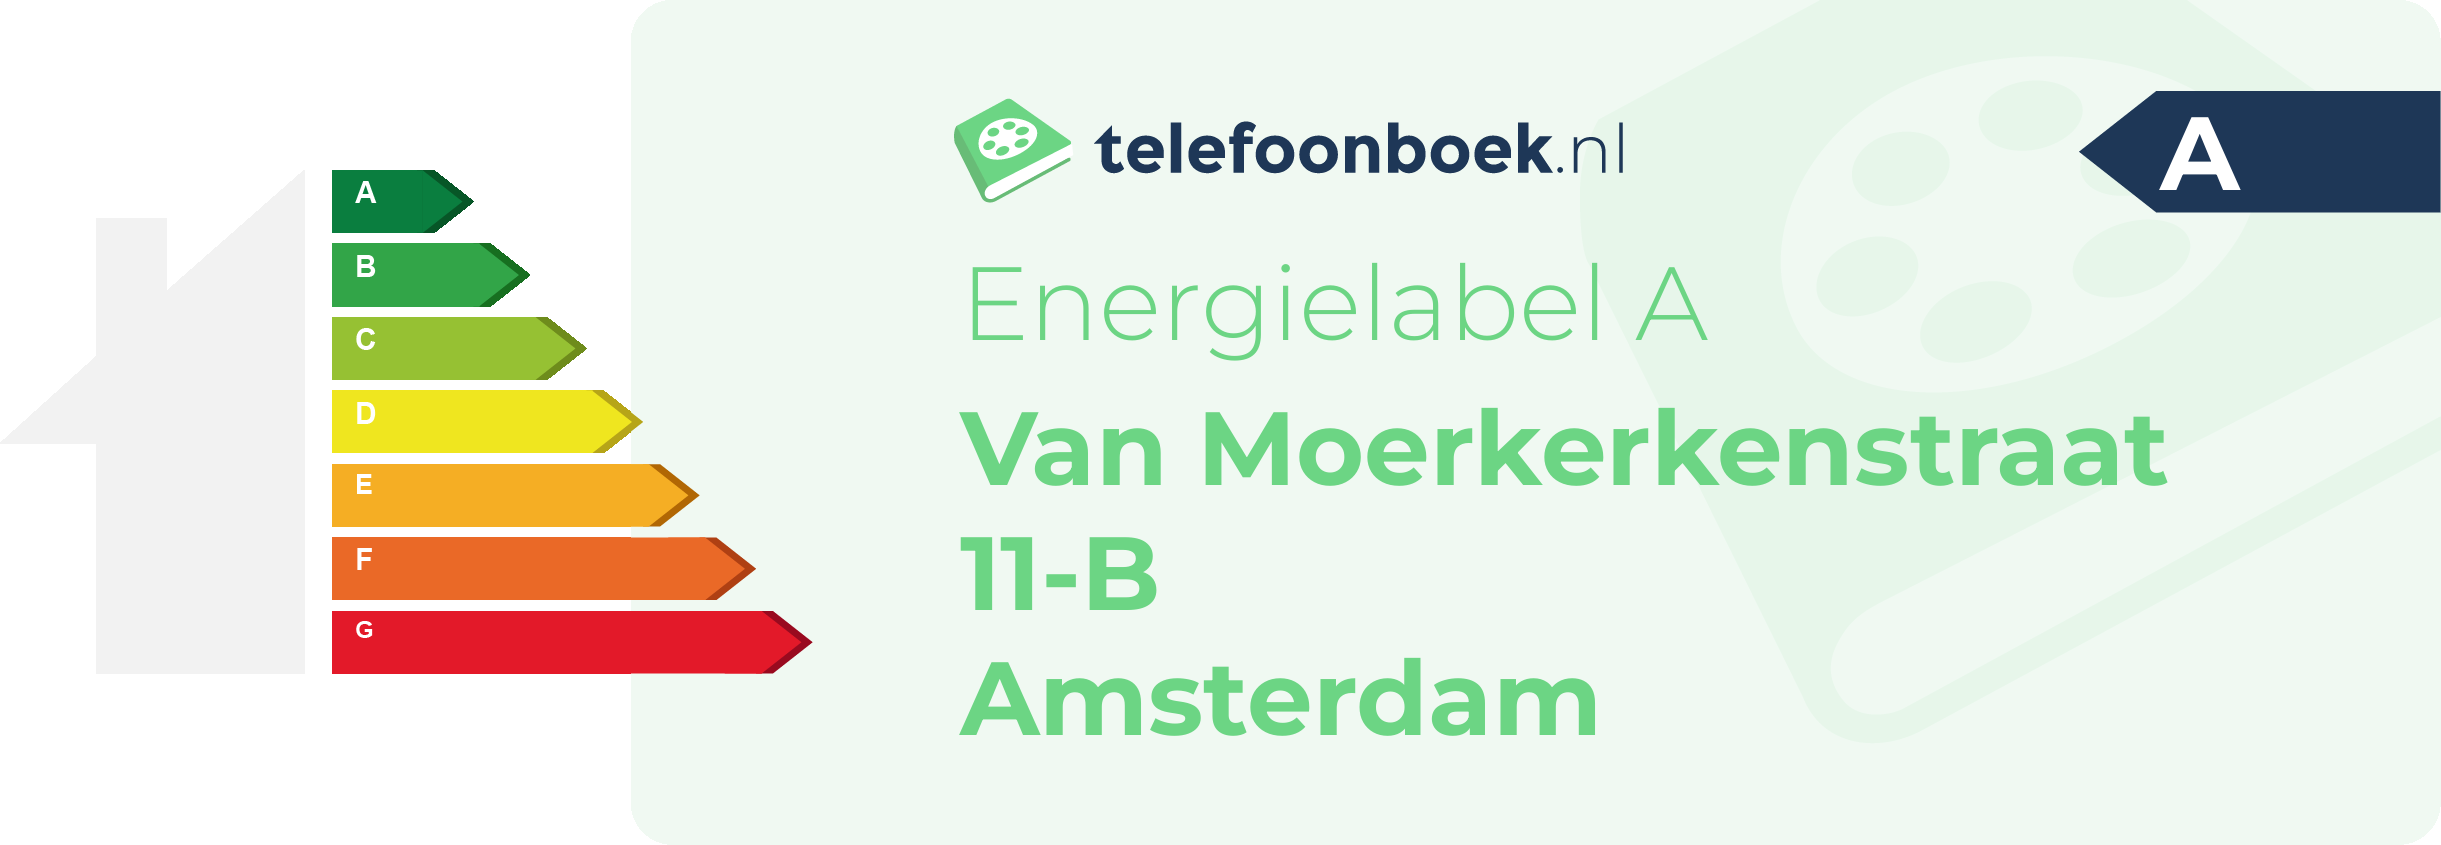 Energielabel Van Moerkerkenstraat 11-B Amsterdam